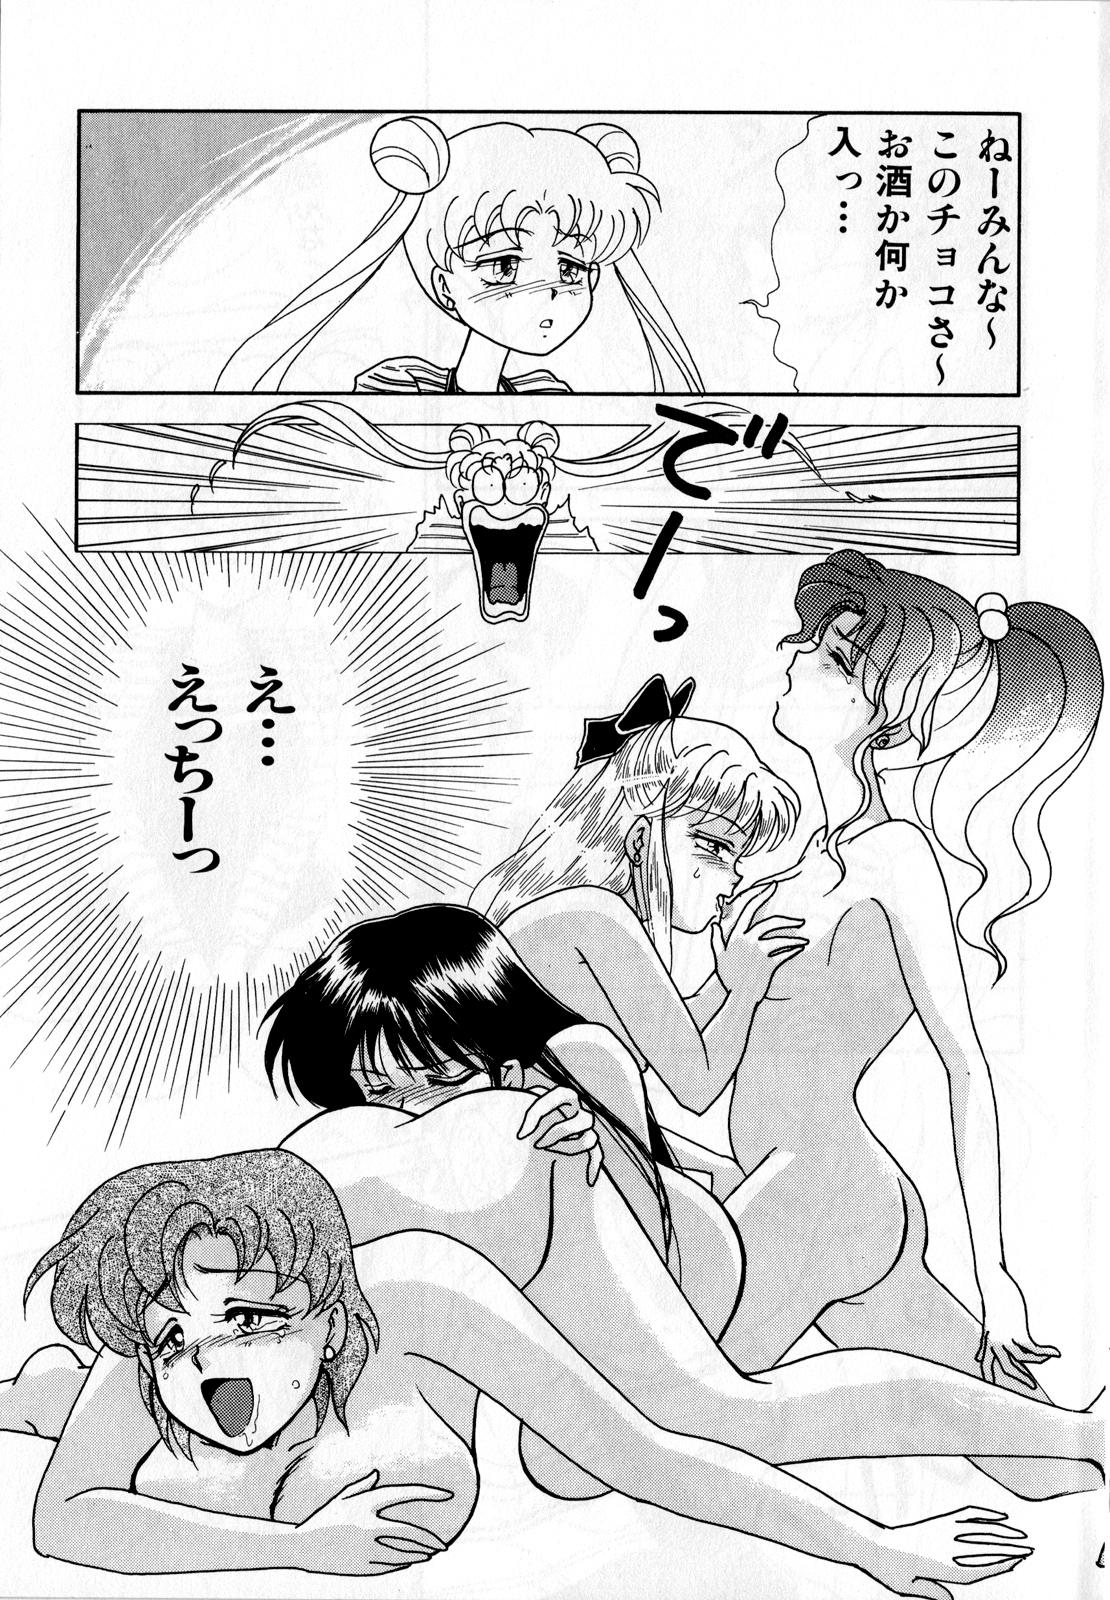 Bondagesex Lunatic Party 3 - Sailor moon Abg - Page 10